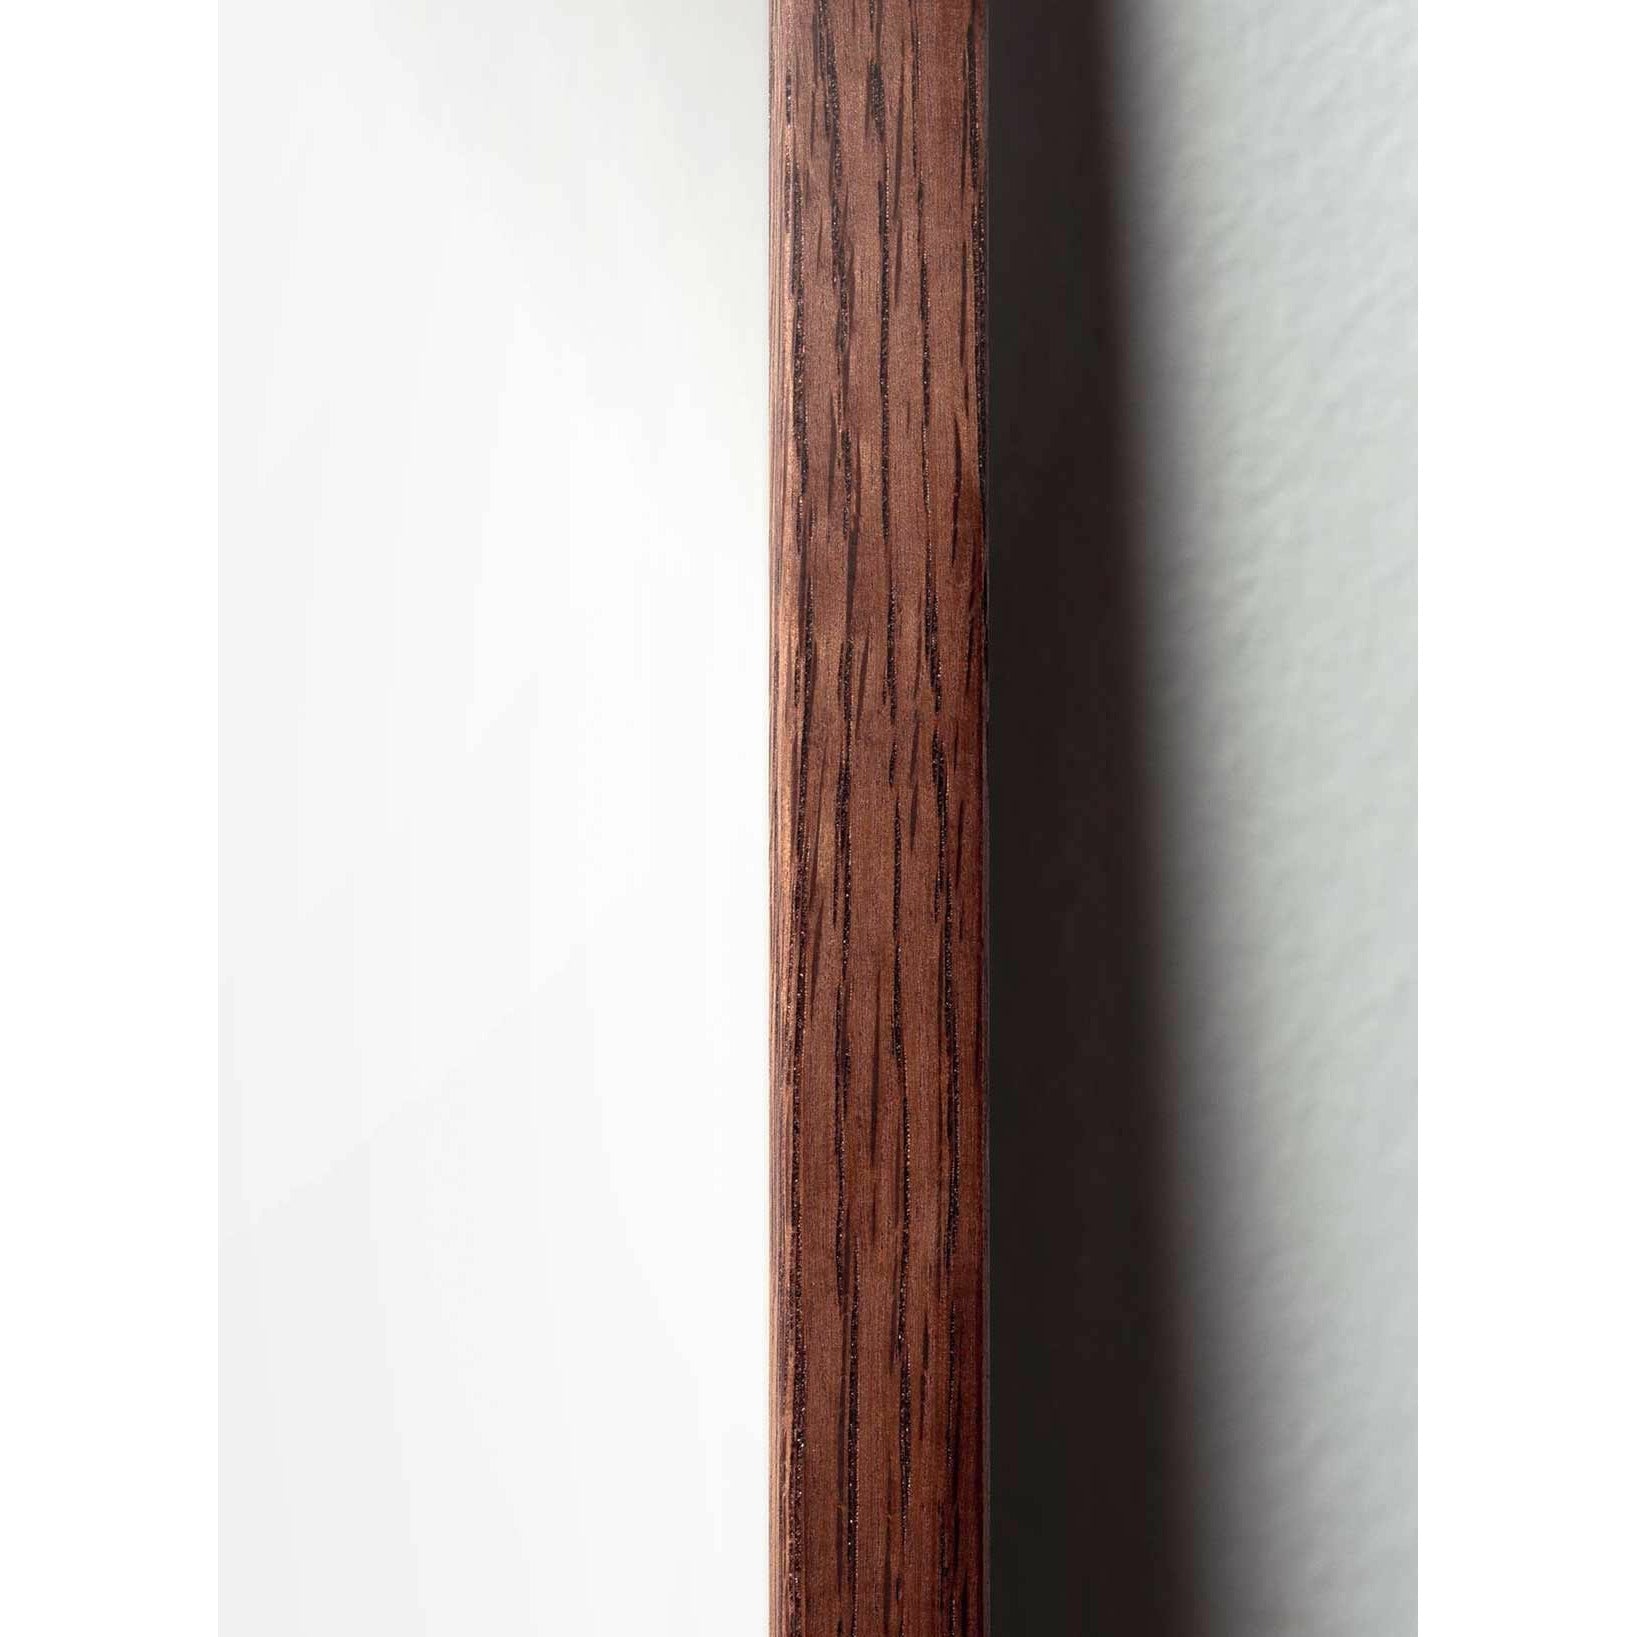 Poster della linea del cono di pino da un'idea, cornice in legno scuro 50x70 cm, sfondo bianco